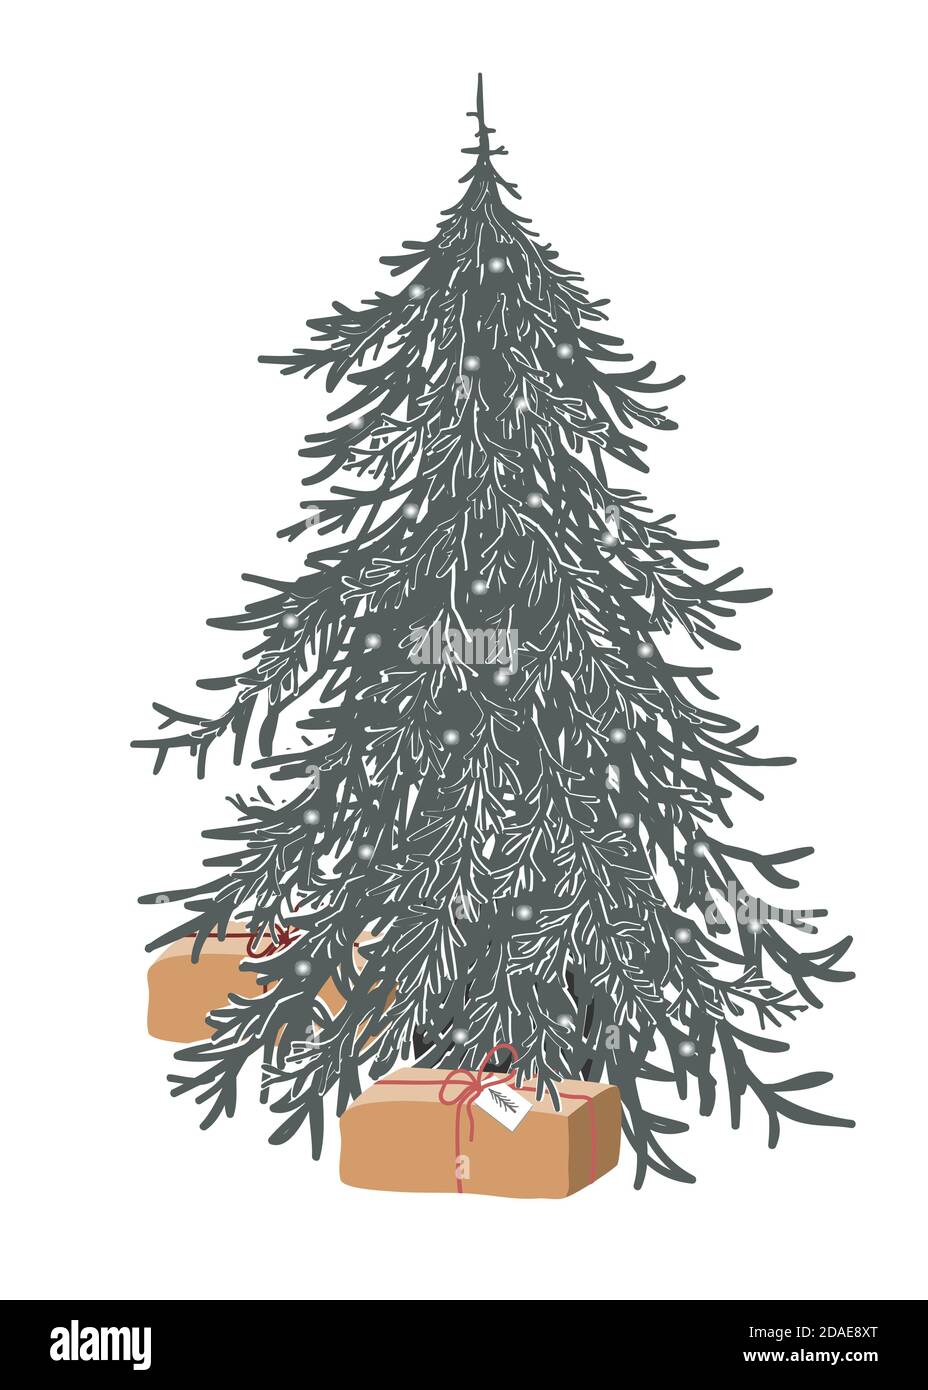 Hand gezeichnet Frohe Weihnachtsbaum mit Lichtern geschmückt. Urlaubssymbol. Cartoon Skizze Element, bunte Weihnachtsbaum isoliert auf weißem Hintergrund. Vektor Stock Vektor